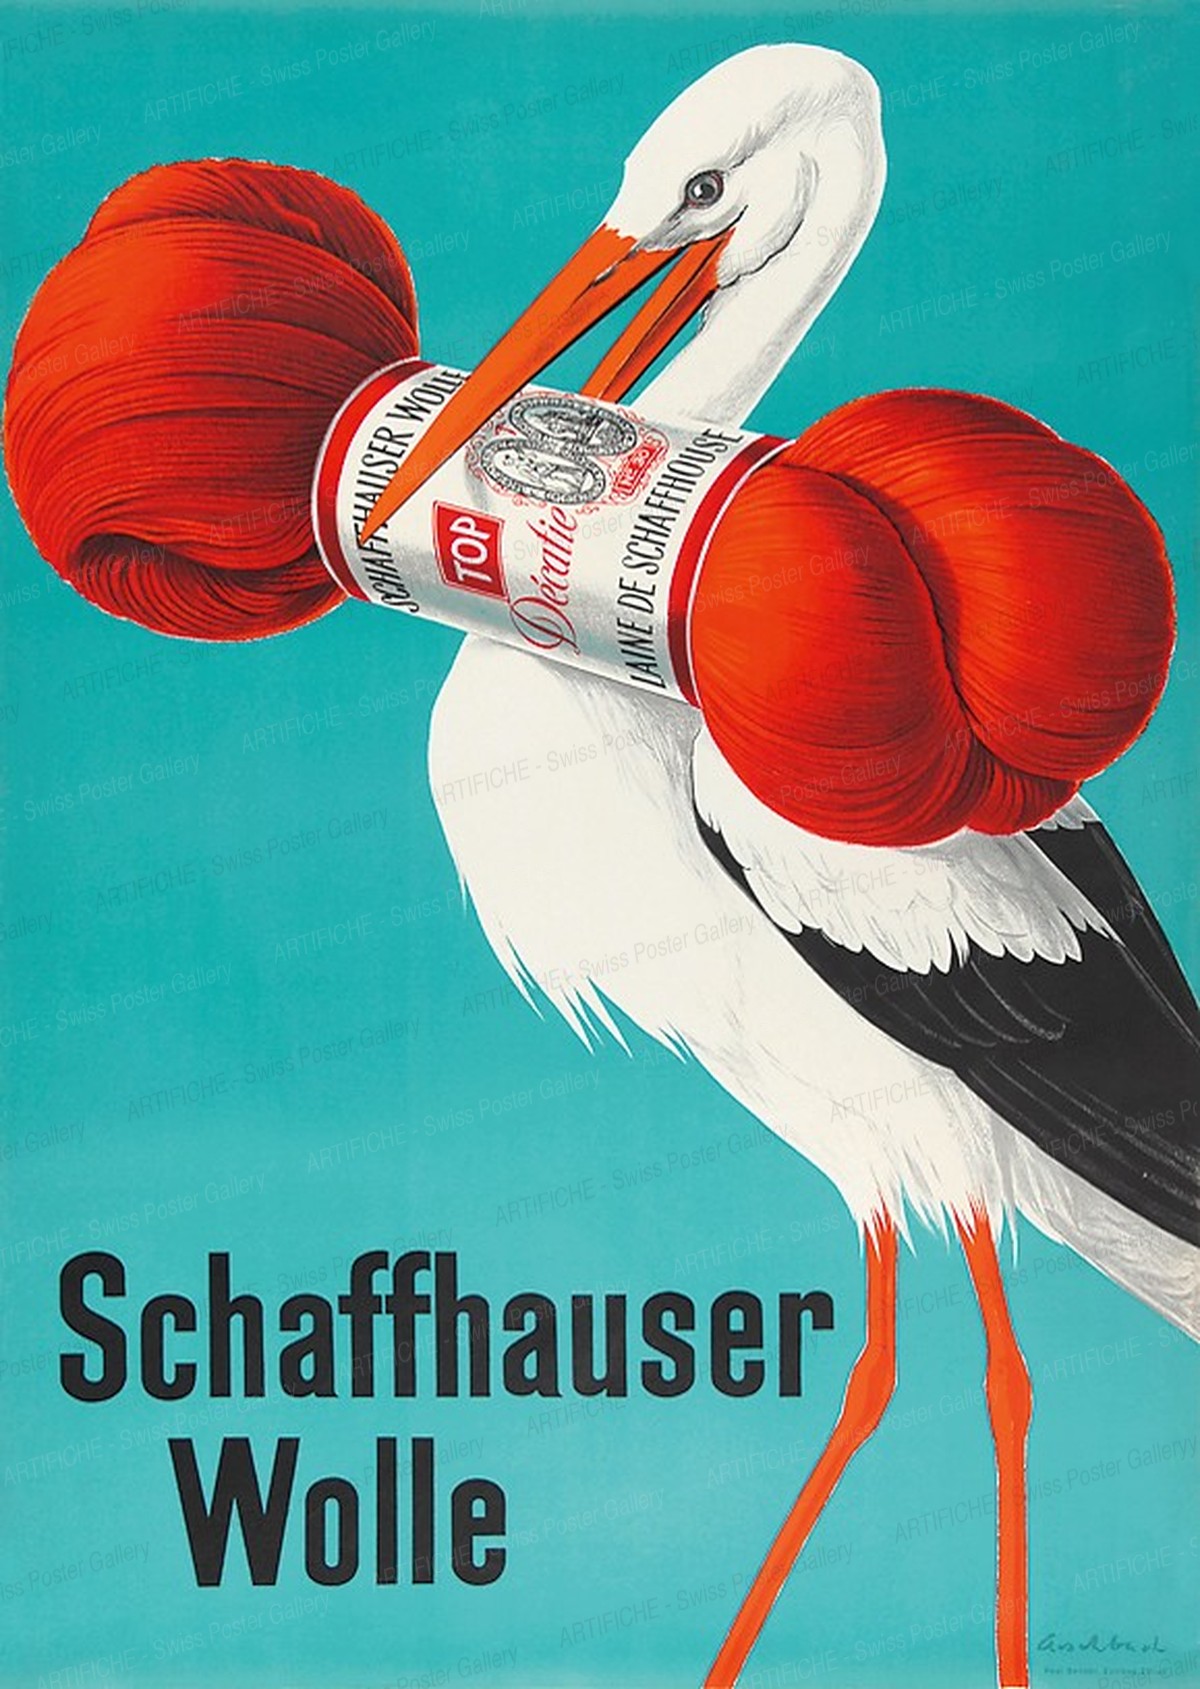 Schaffhauser Wolle, Hans Aeschbach